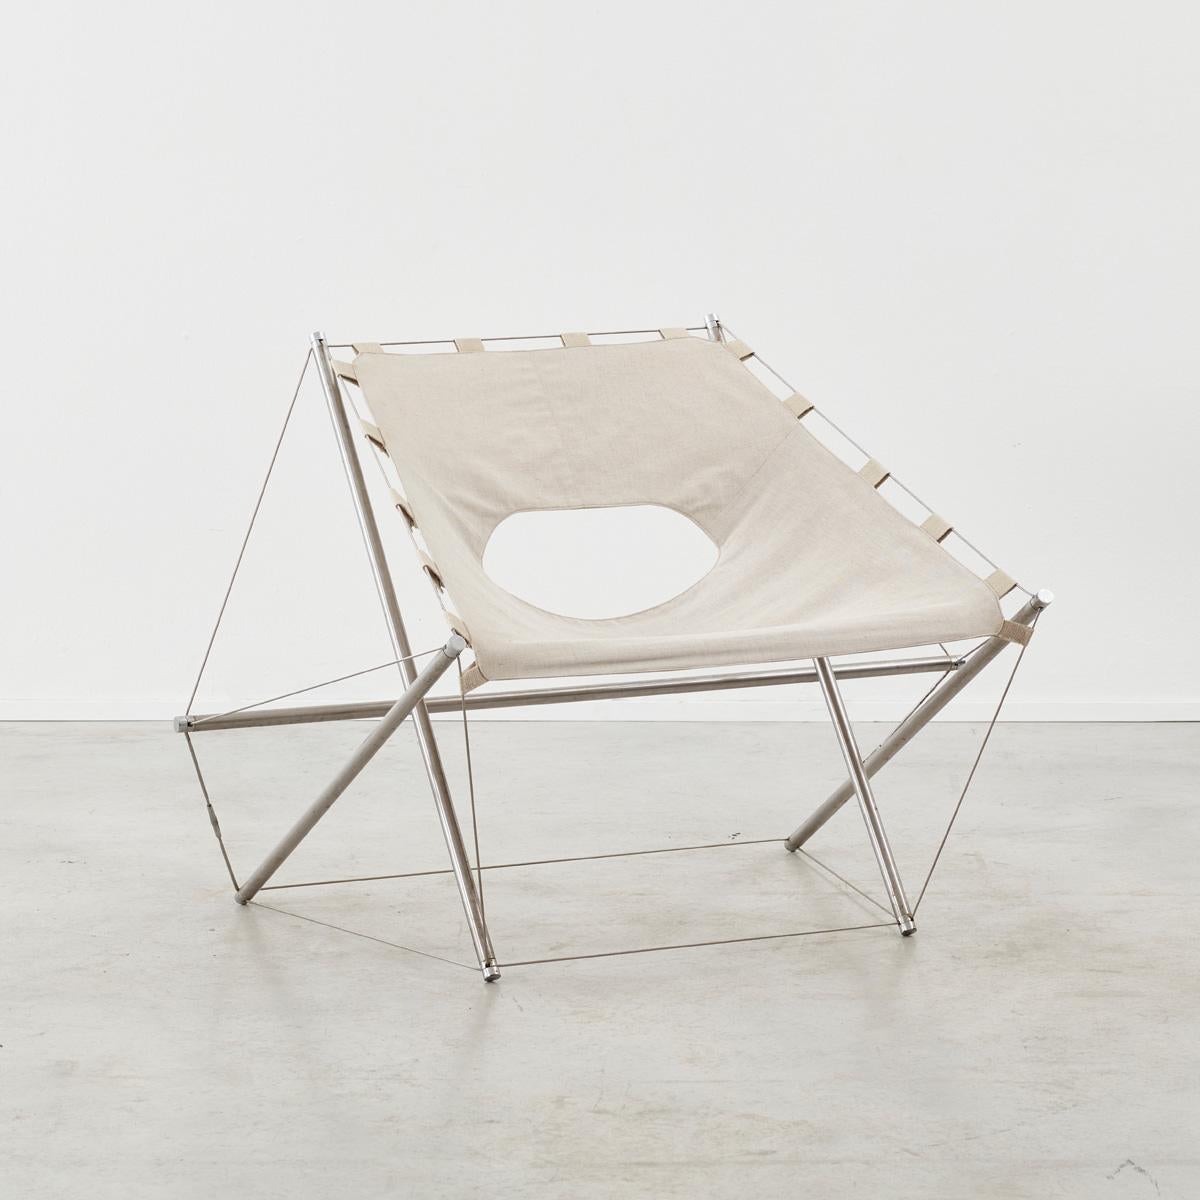 La chaise Galaxie, également connue sous le nom de chaise Zig-Zag, est un design inimitable de l'architecte et designer français Jacques-Henri Varichon (1945-aujourd'hui). Exposées en 1969, ces chaises ont été décrites par leur créateur comme étant